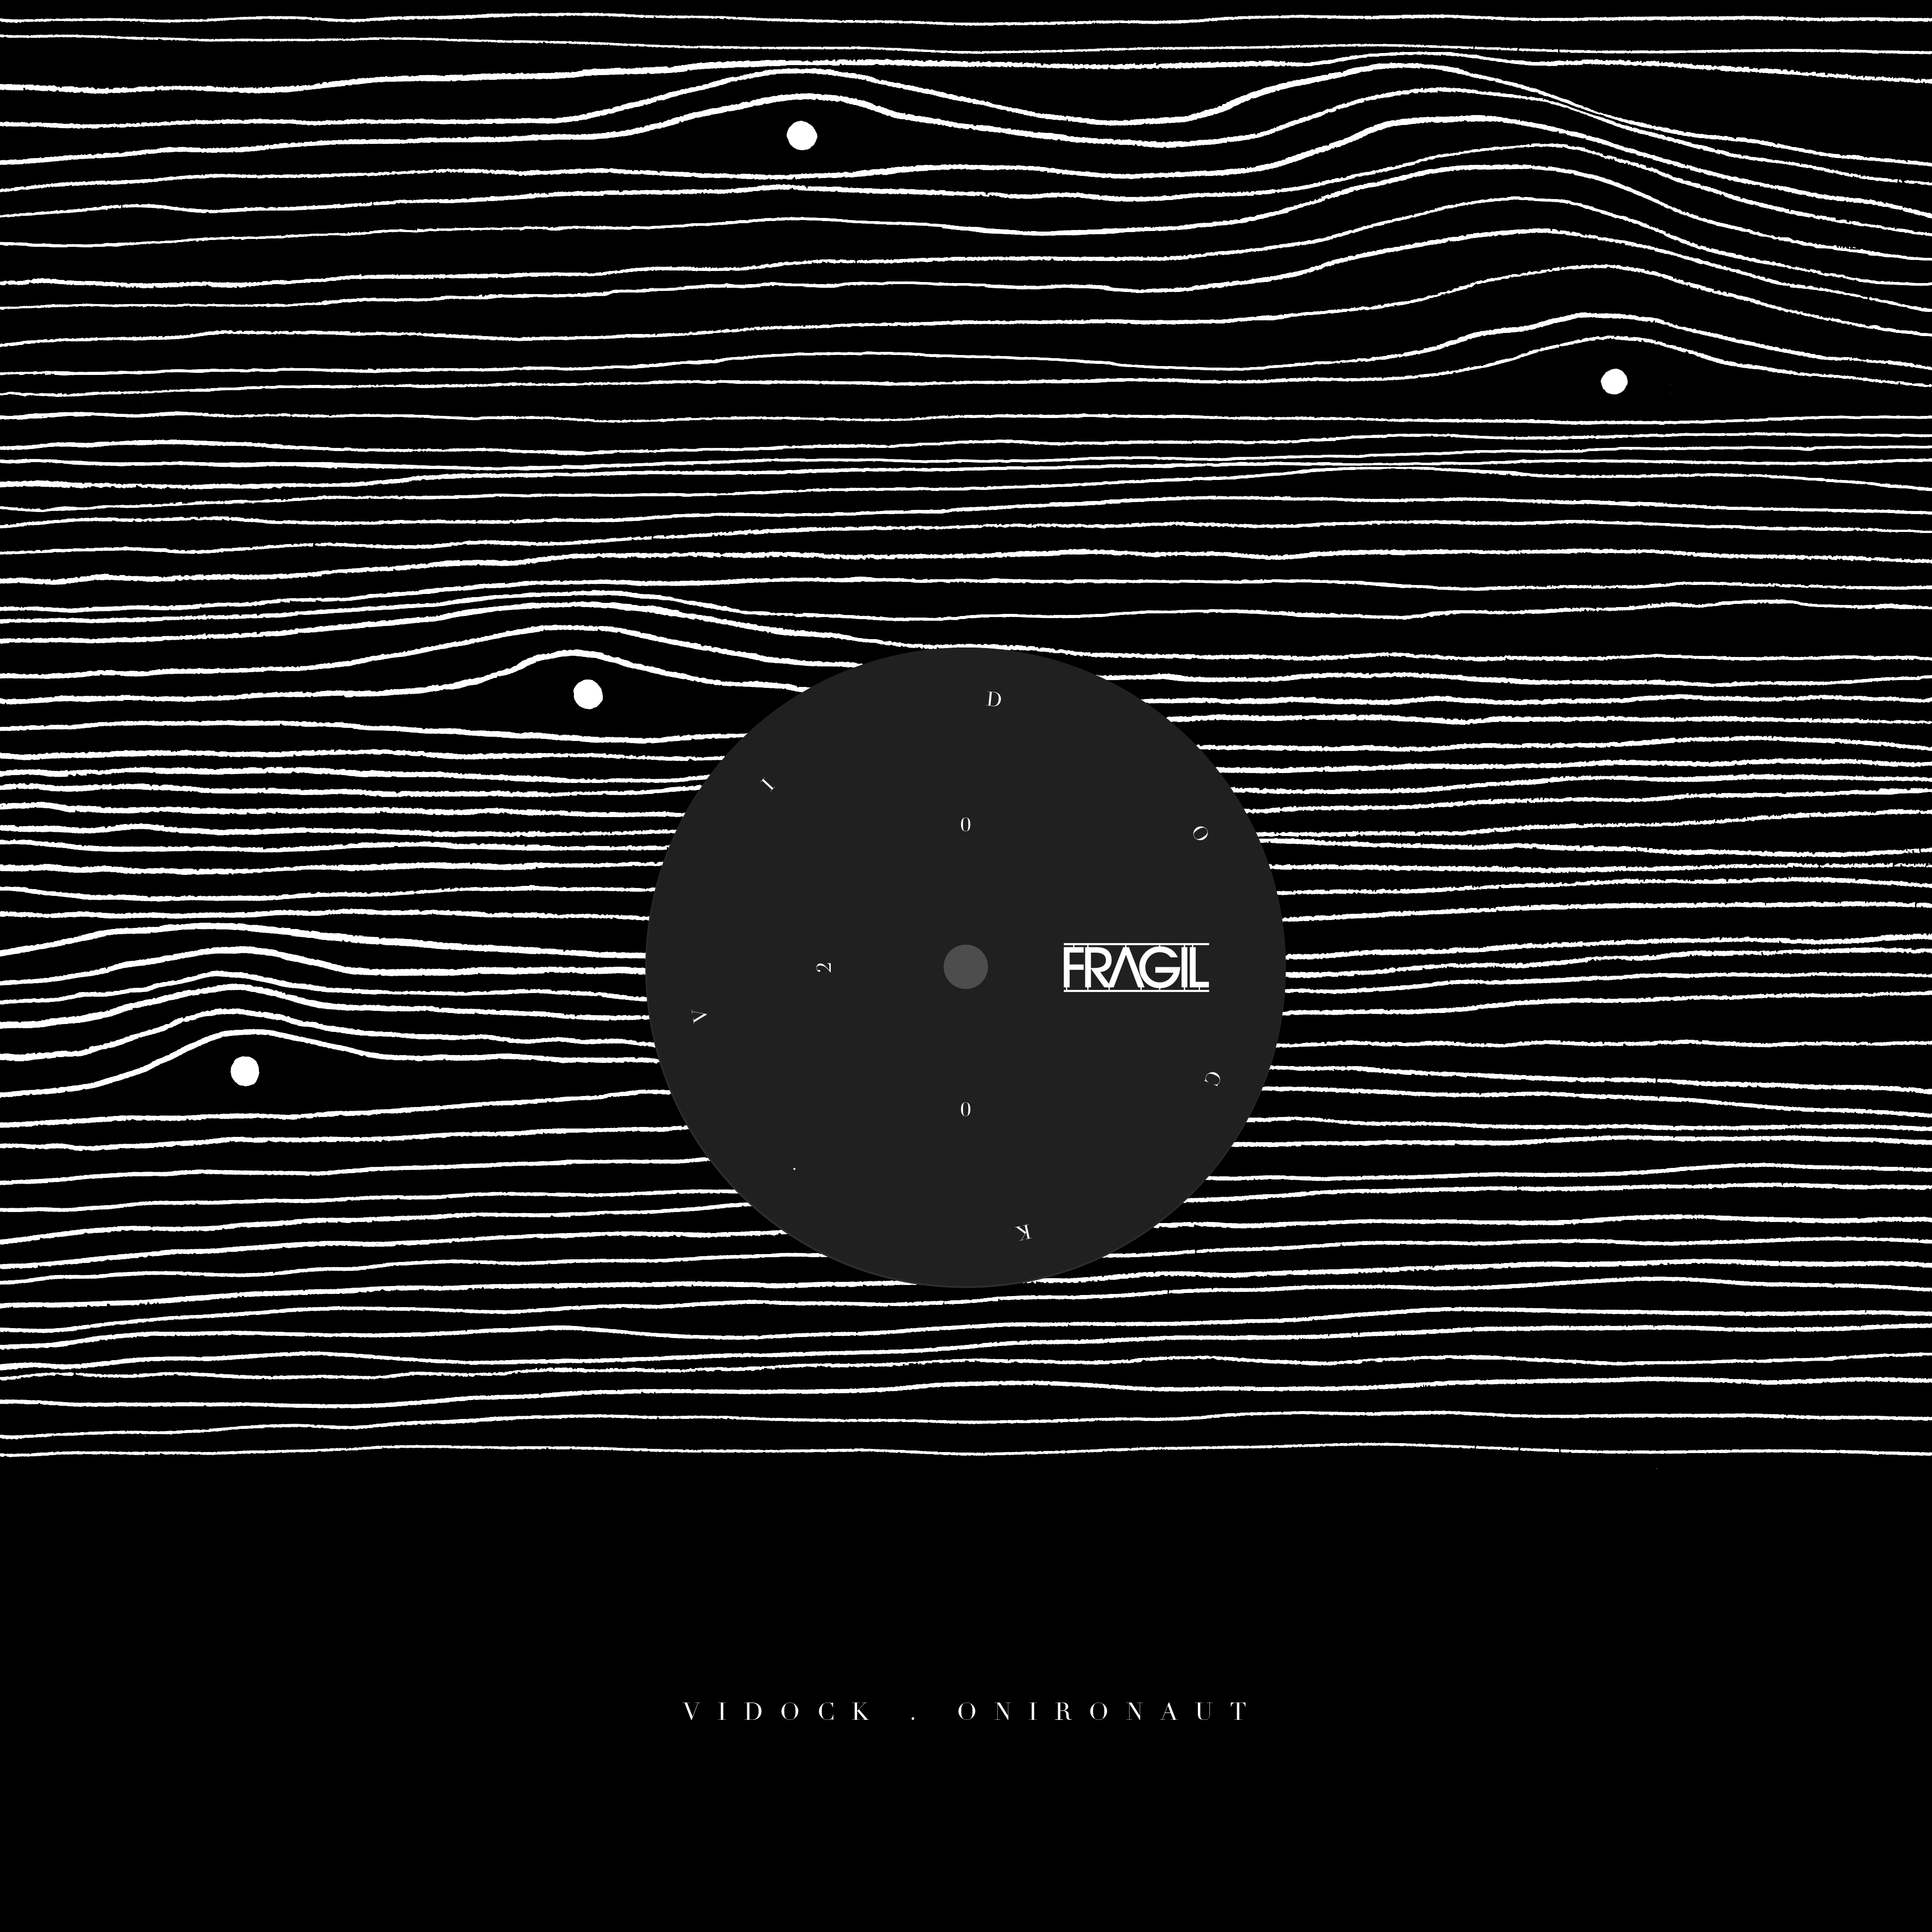 Vidock – Metamorph (Simo Cell Remix)